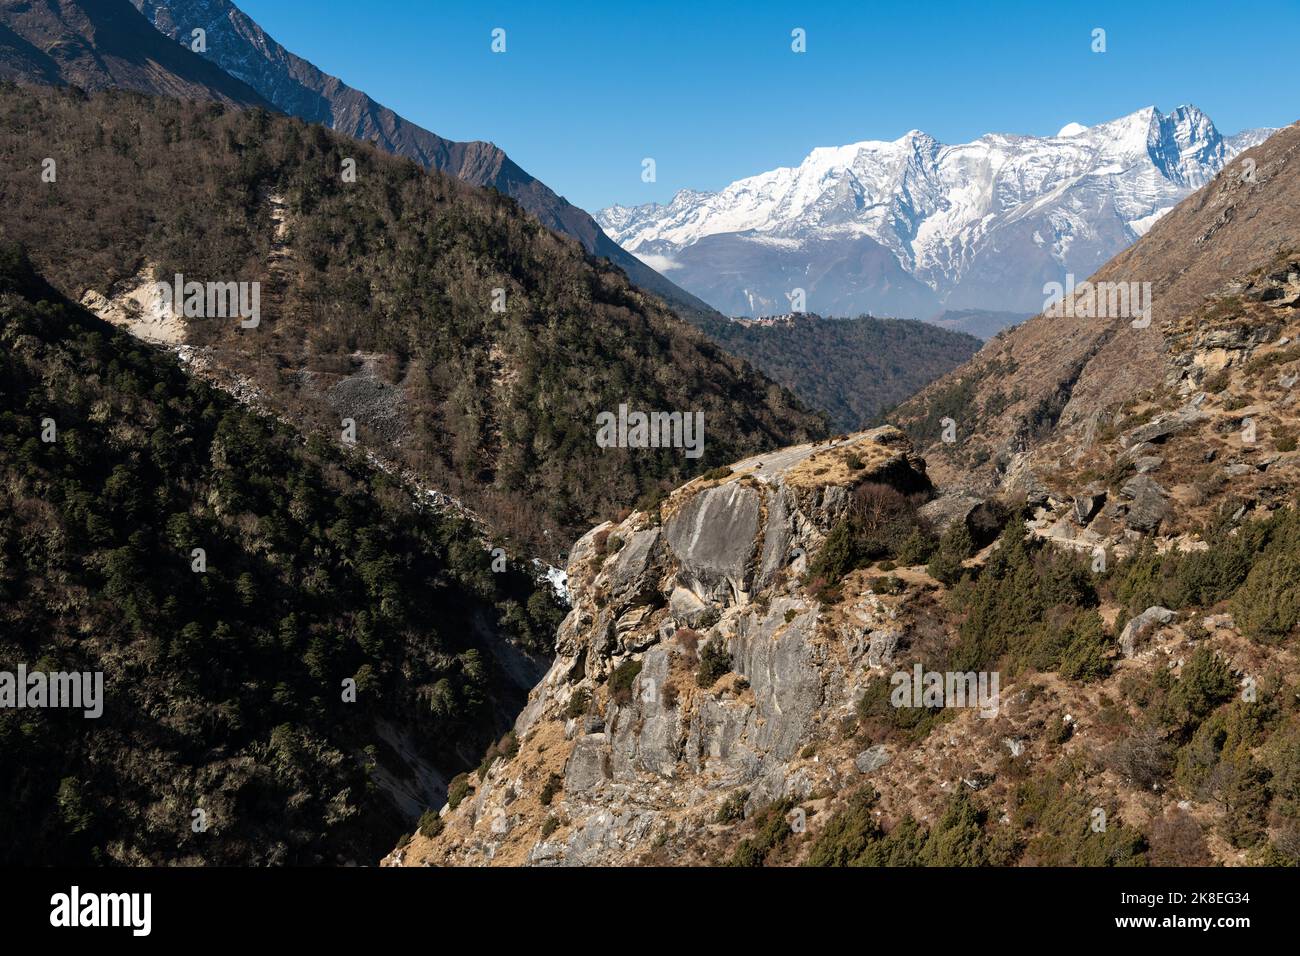 Foto de la naturaleza, hermosas montañas altas con árboles, Nepal Foto de stock